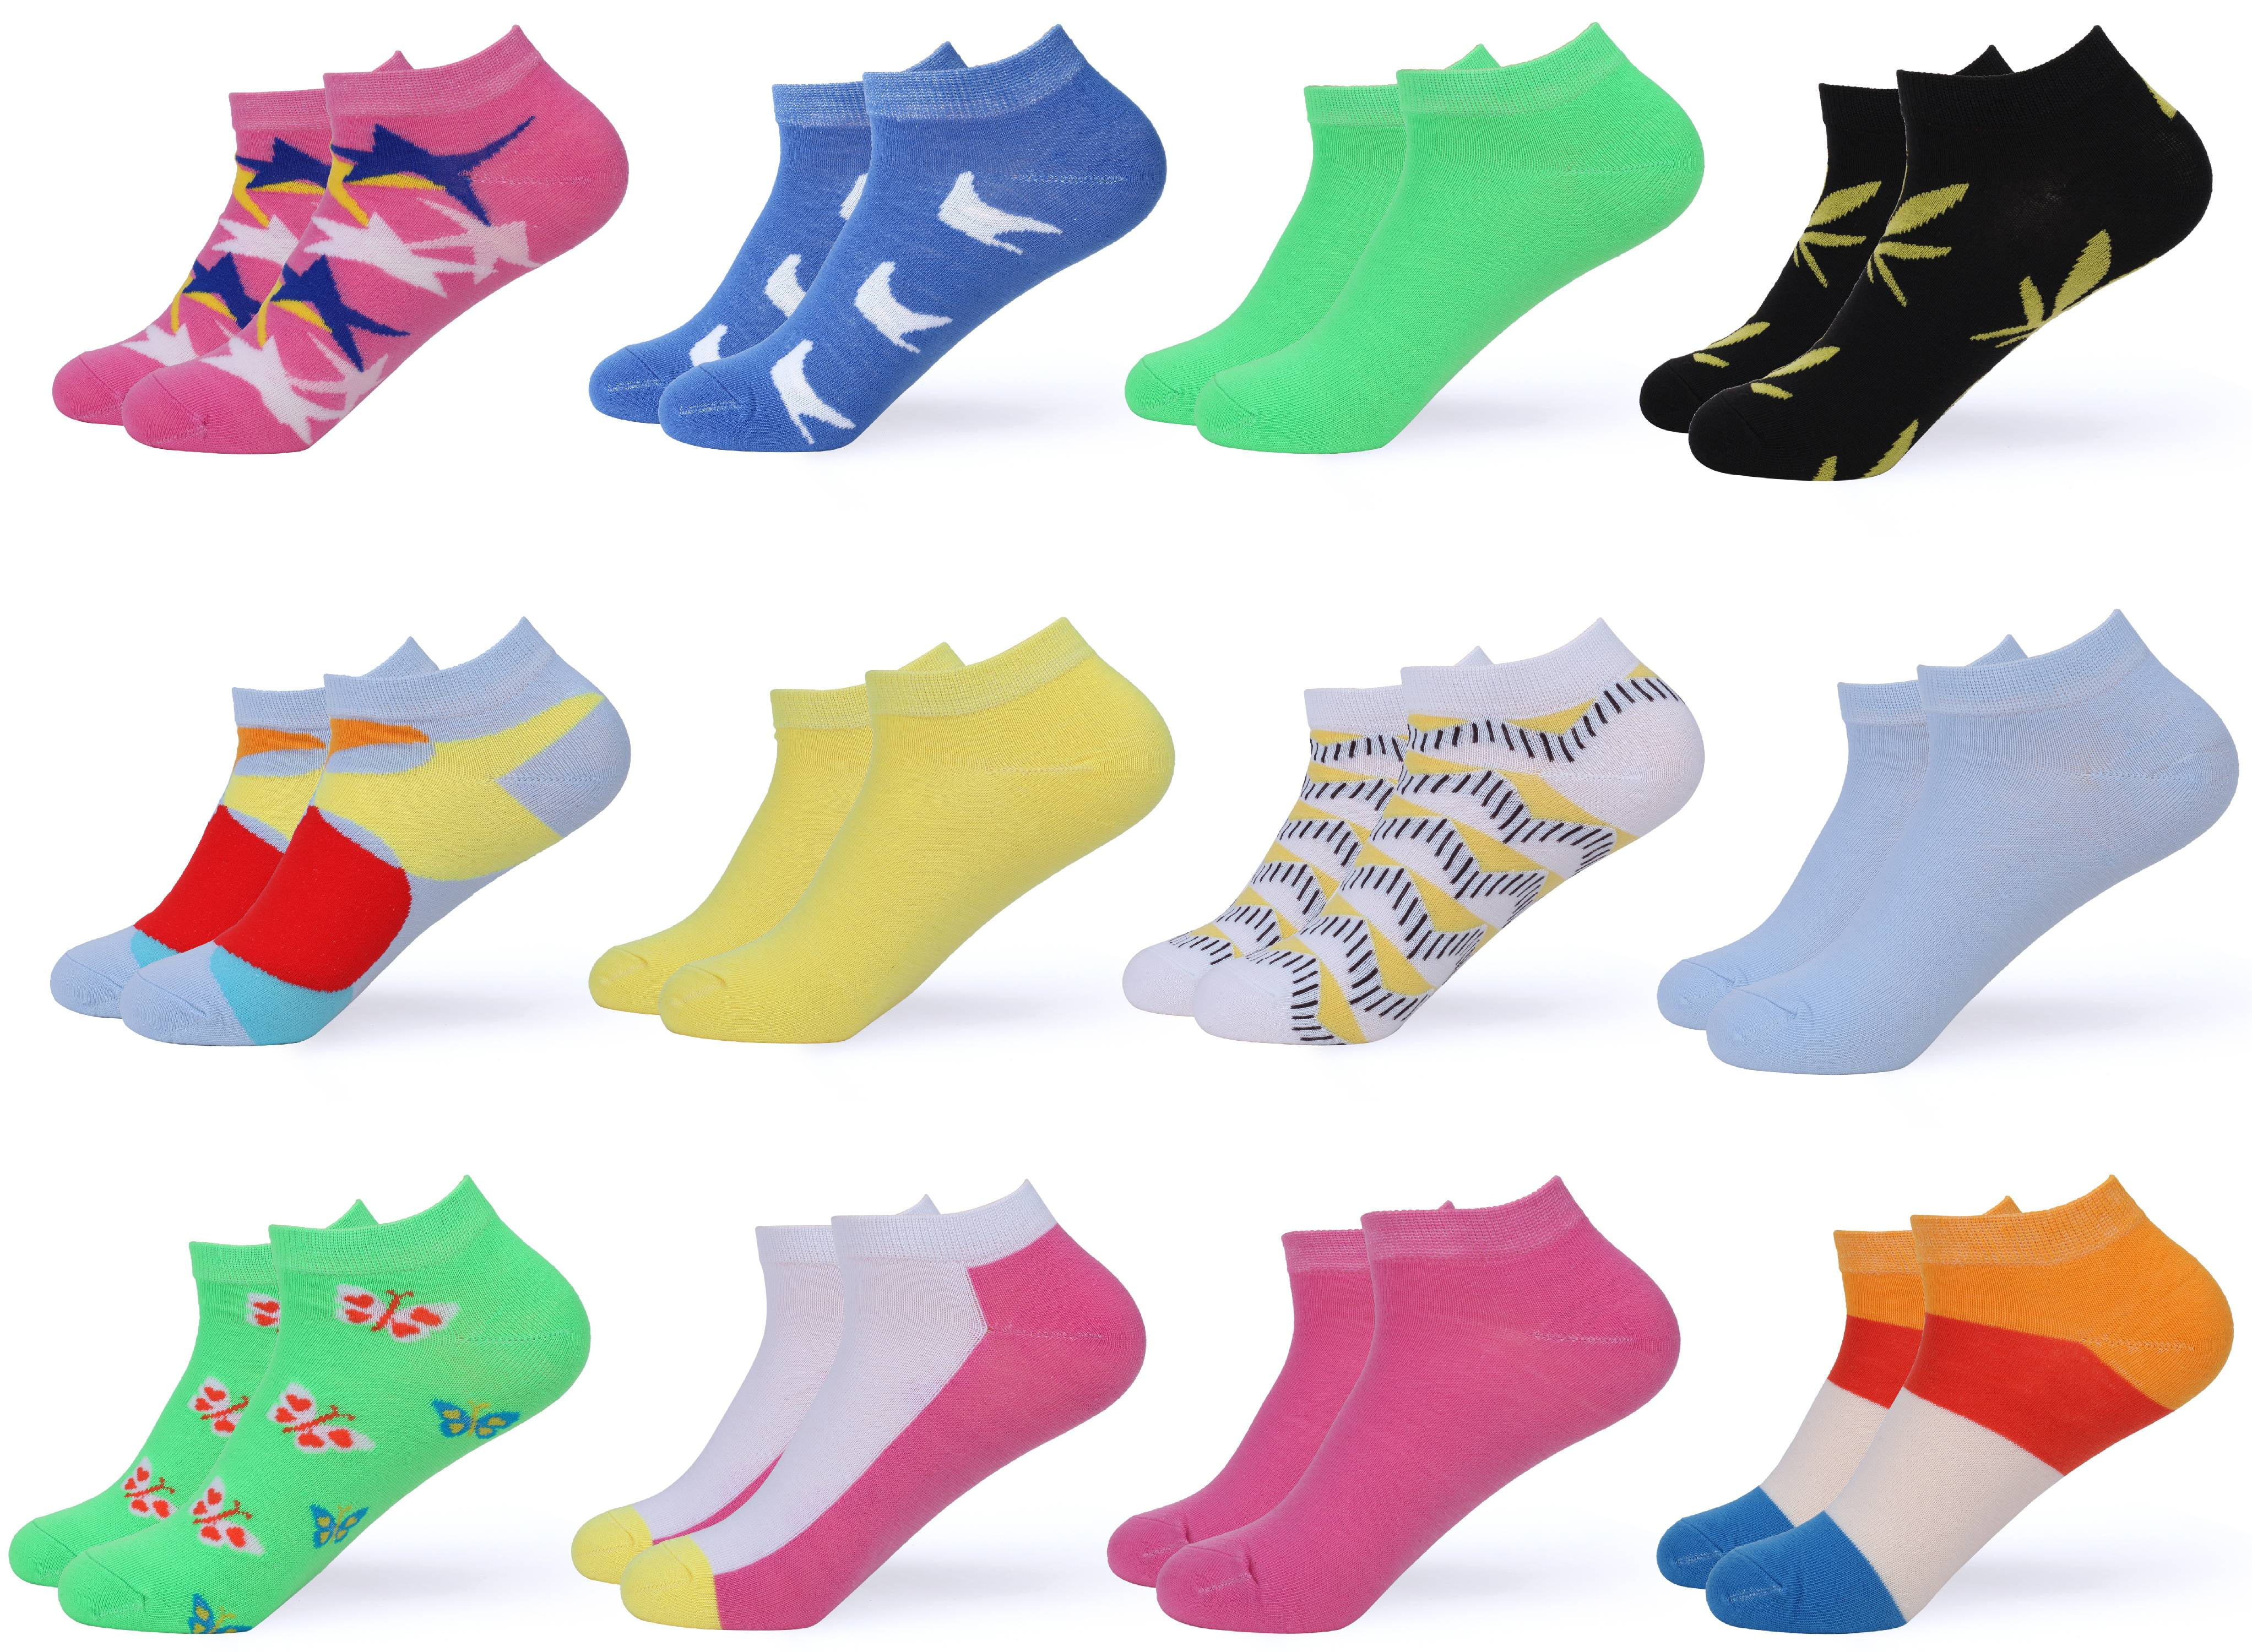 Gallery Seven - Women's Ankle Socks - Low Cut Colorful Socks For Women ...